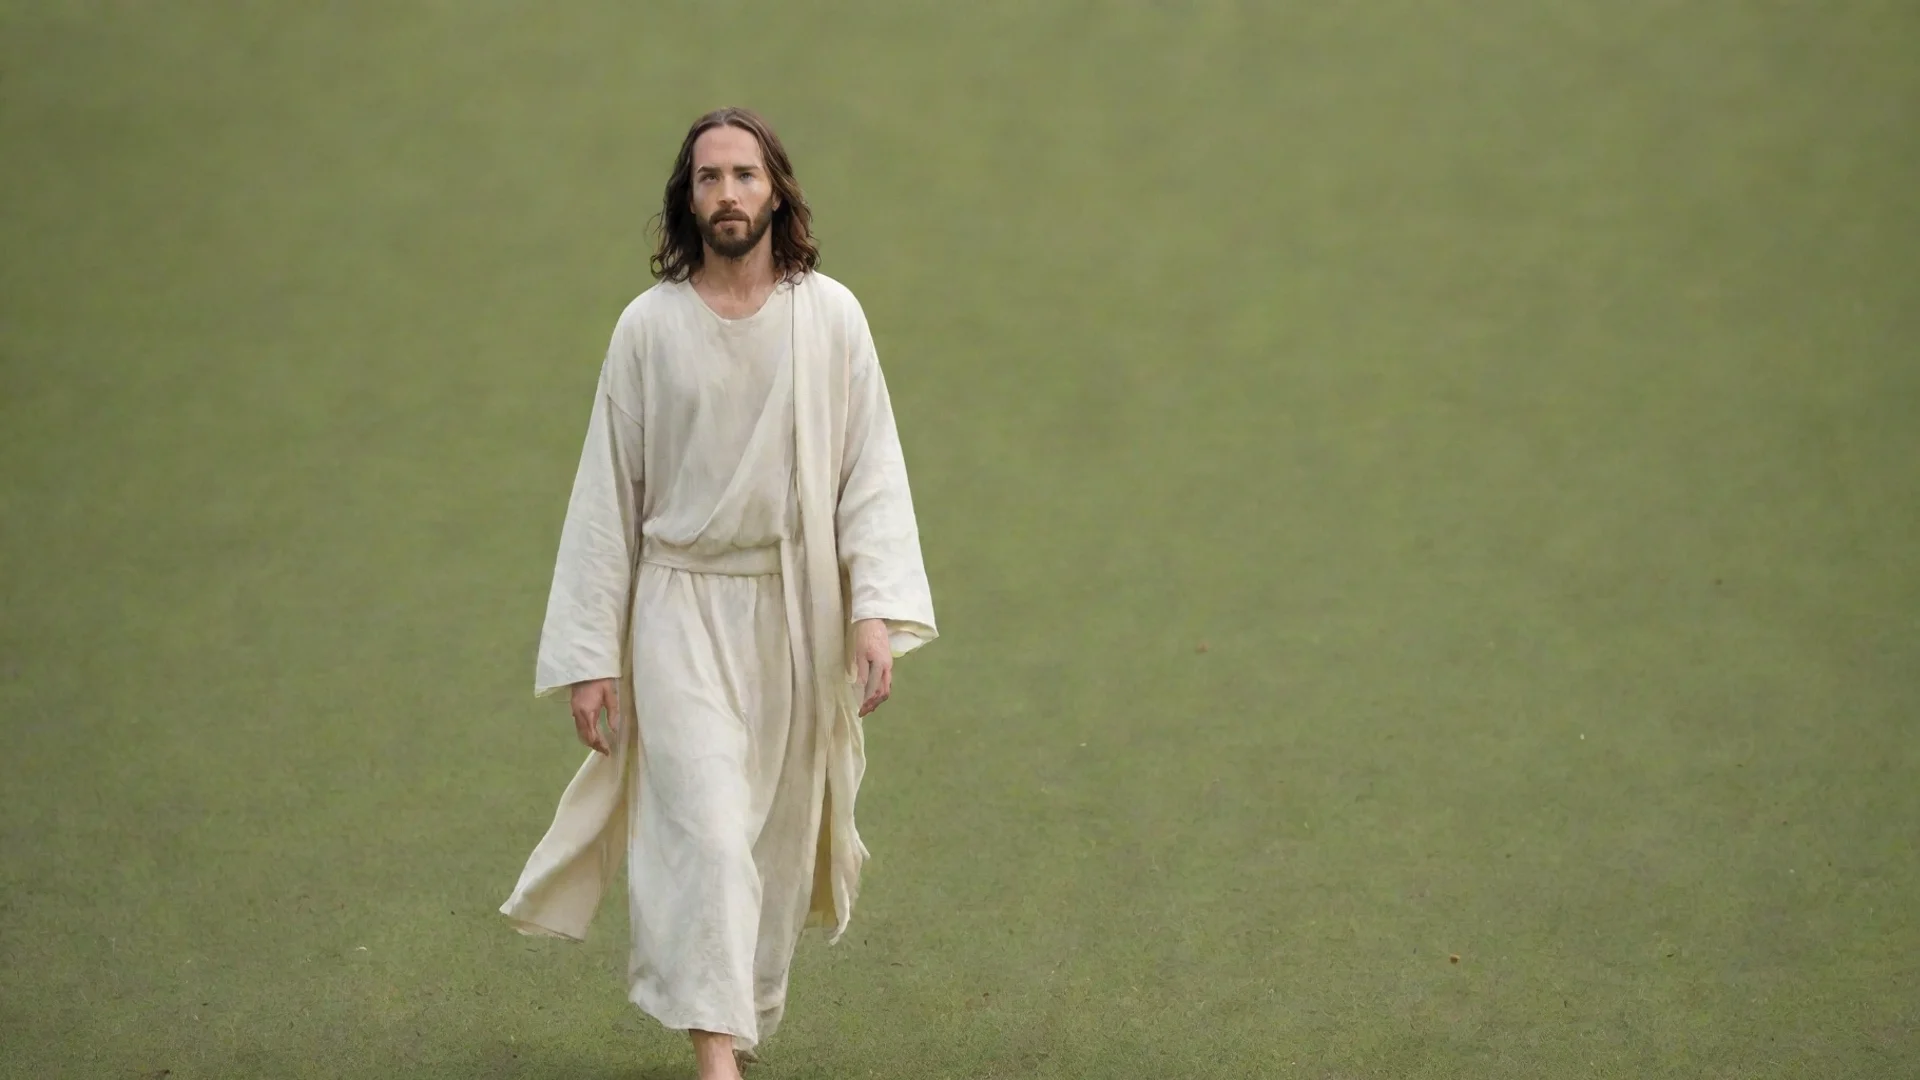 amazing jesus walking on field awesome portrait 2 wide